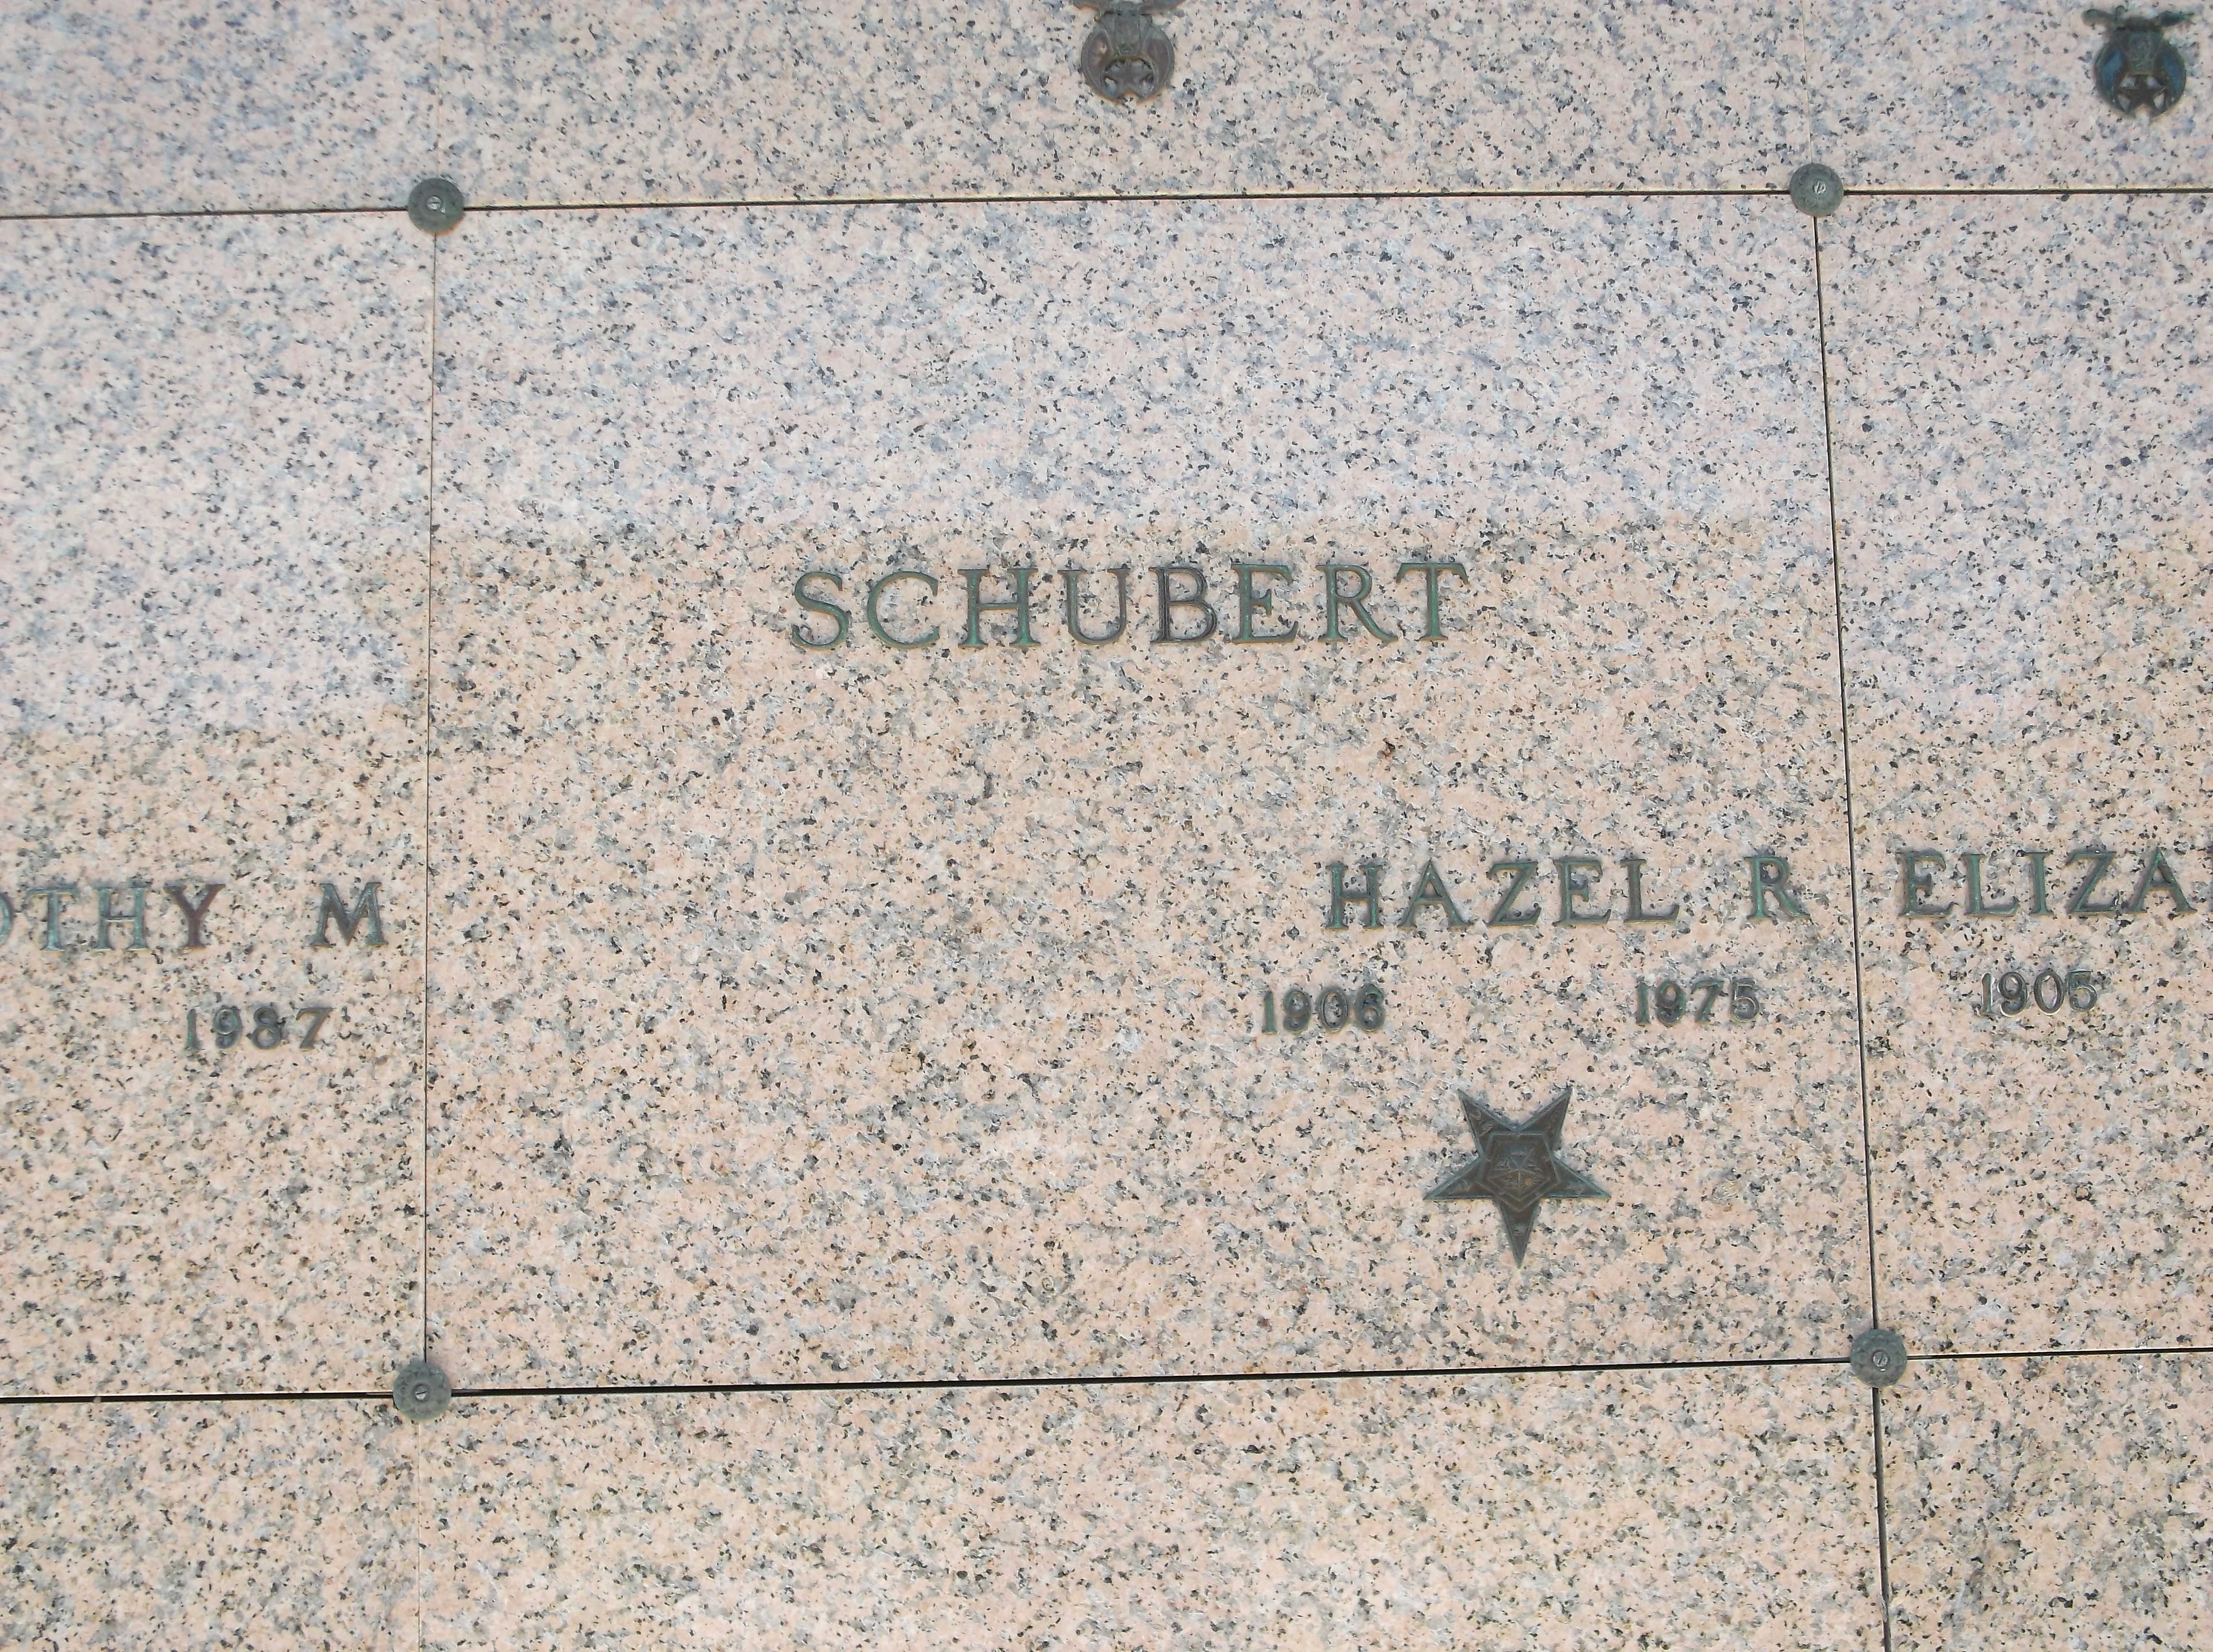 Hazel R Schubert